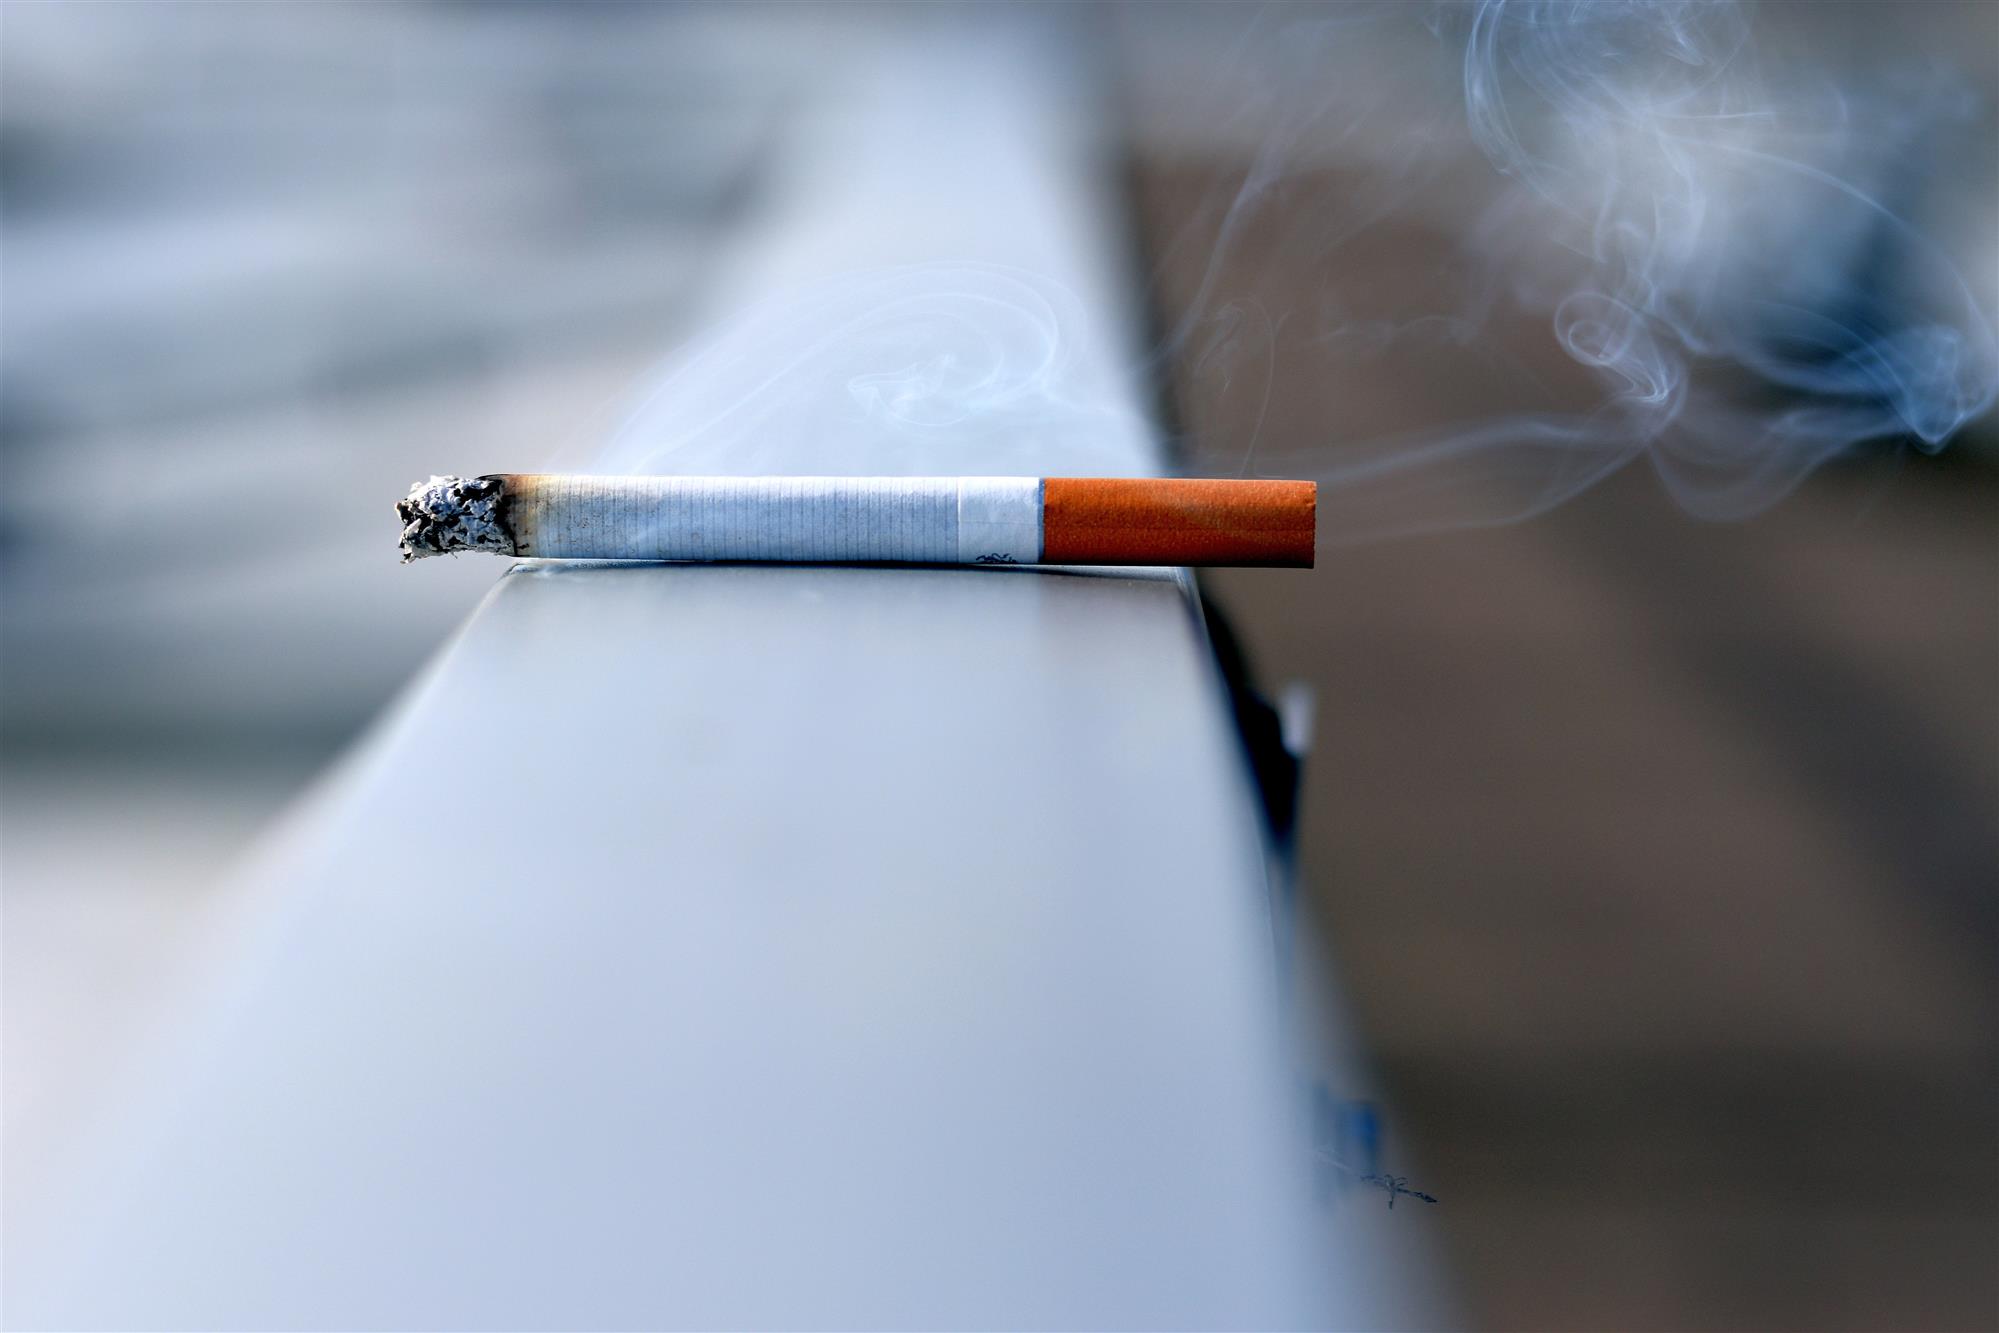 Can strata ban smoking - The Strata Collective